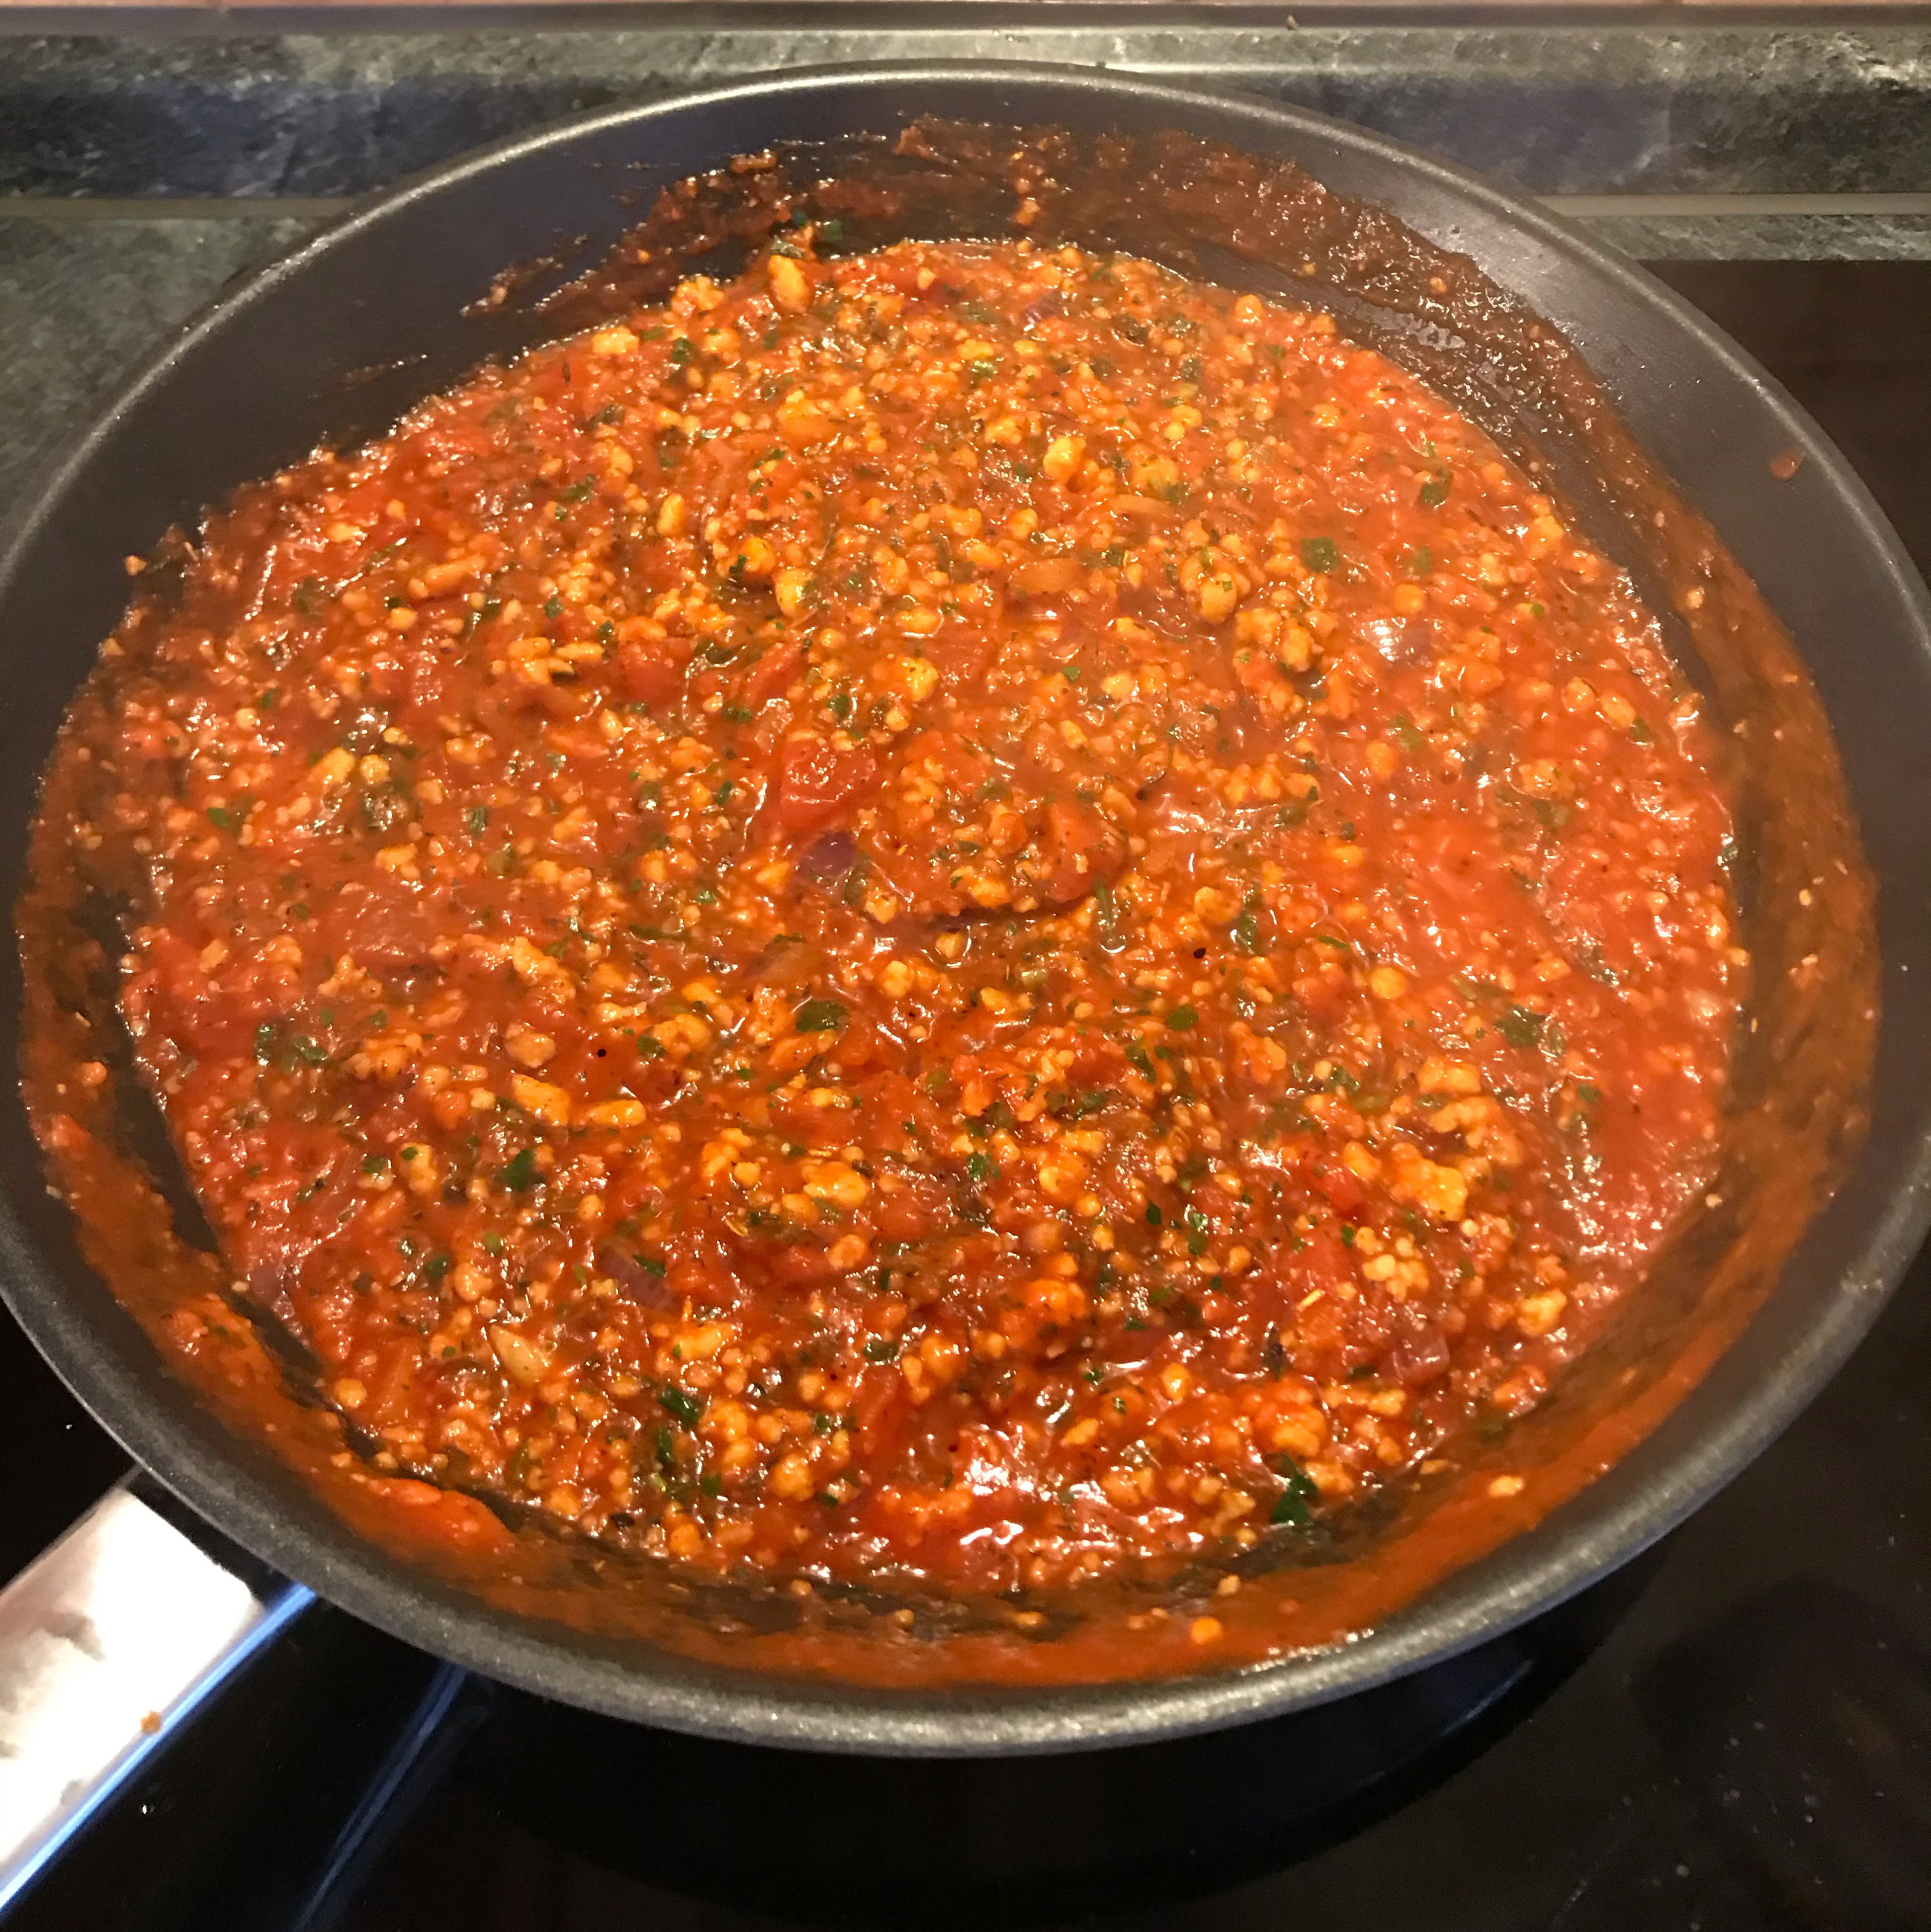 Mit den stückigen Tomaten ablöschen, umrühren und ca. 5 Minuten auf mittlerer Stufe vor sich hinköcheln lassen. Frische oder TK-Kräuter hinzufügen und nach Belieben abschmecken.